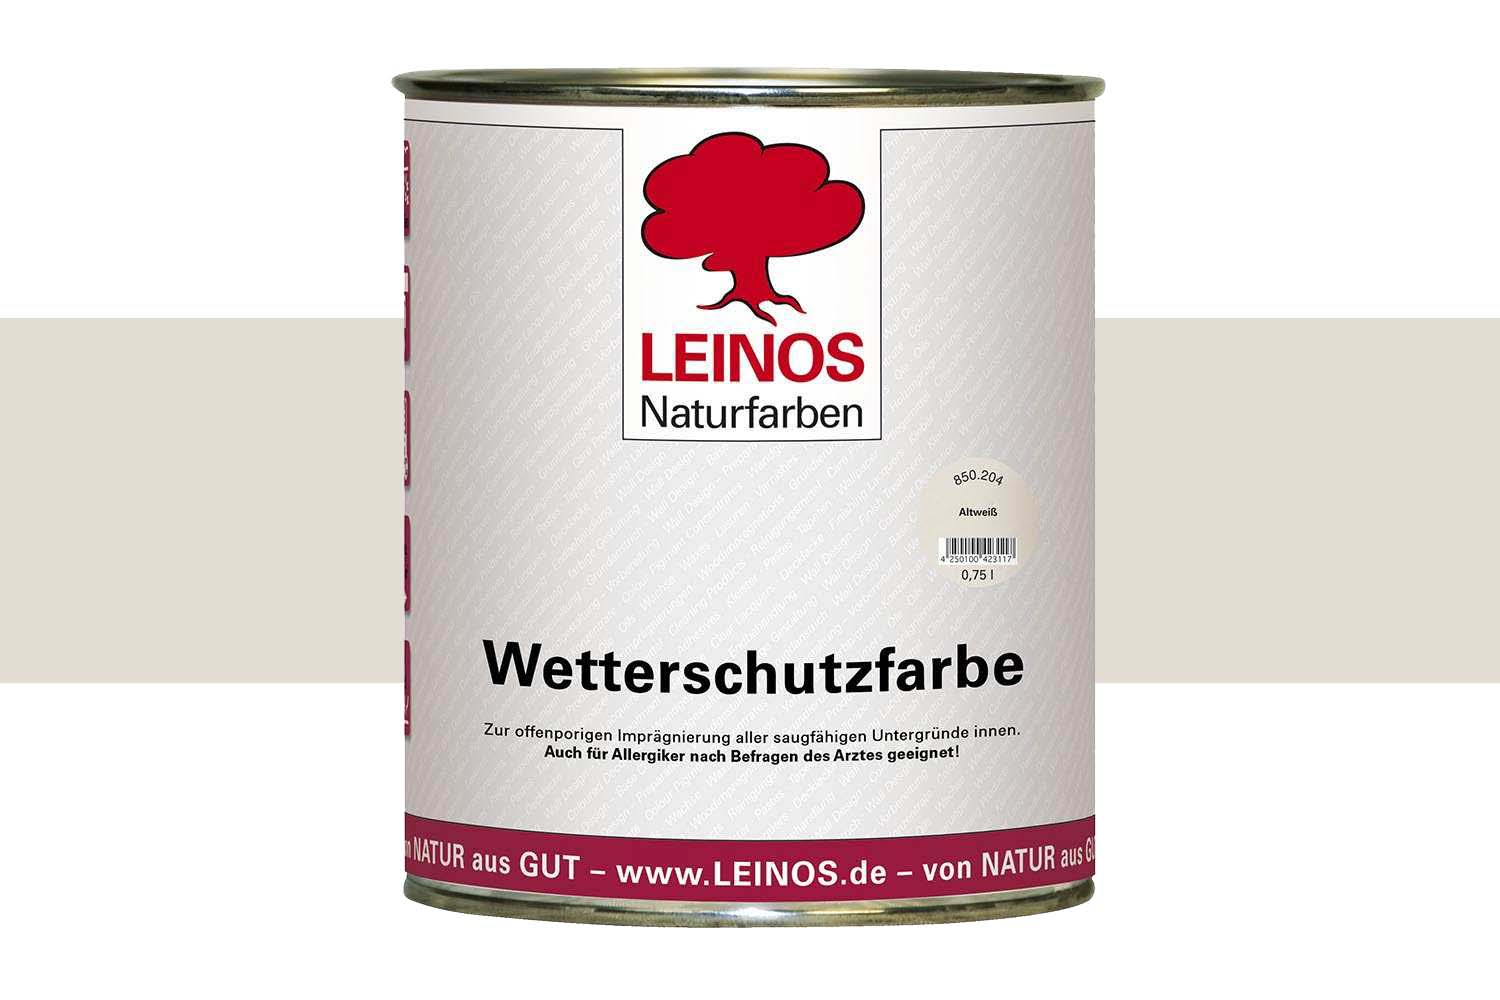 Leinos Wetterschutzfarbe auf Ölbasis 850 Altweiß